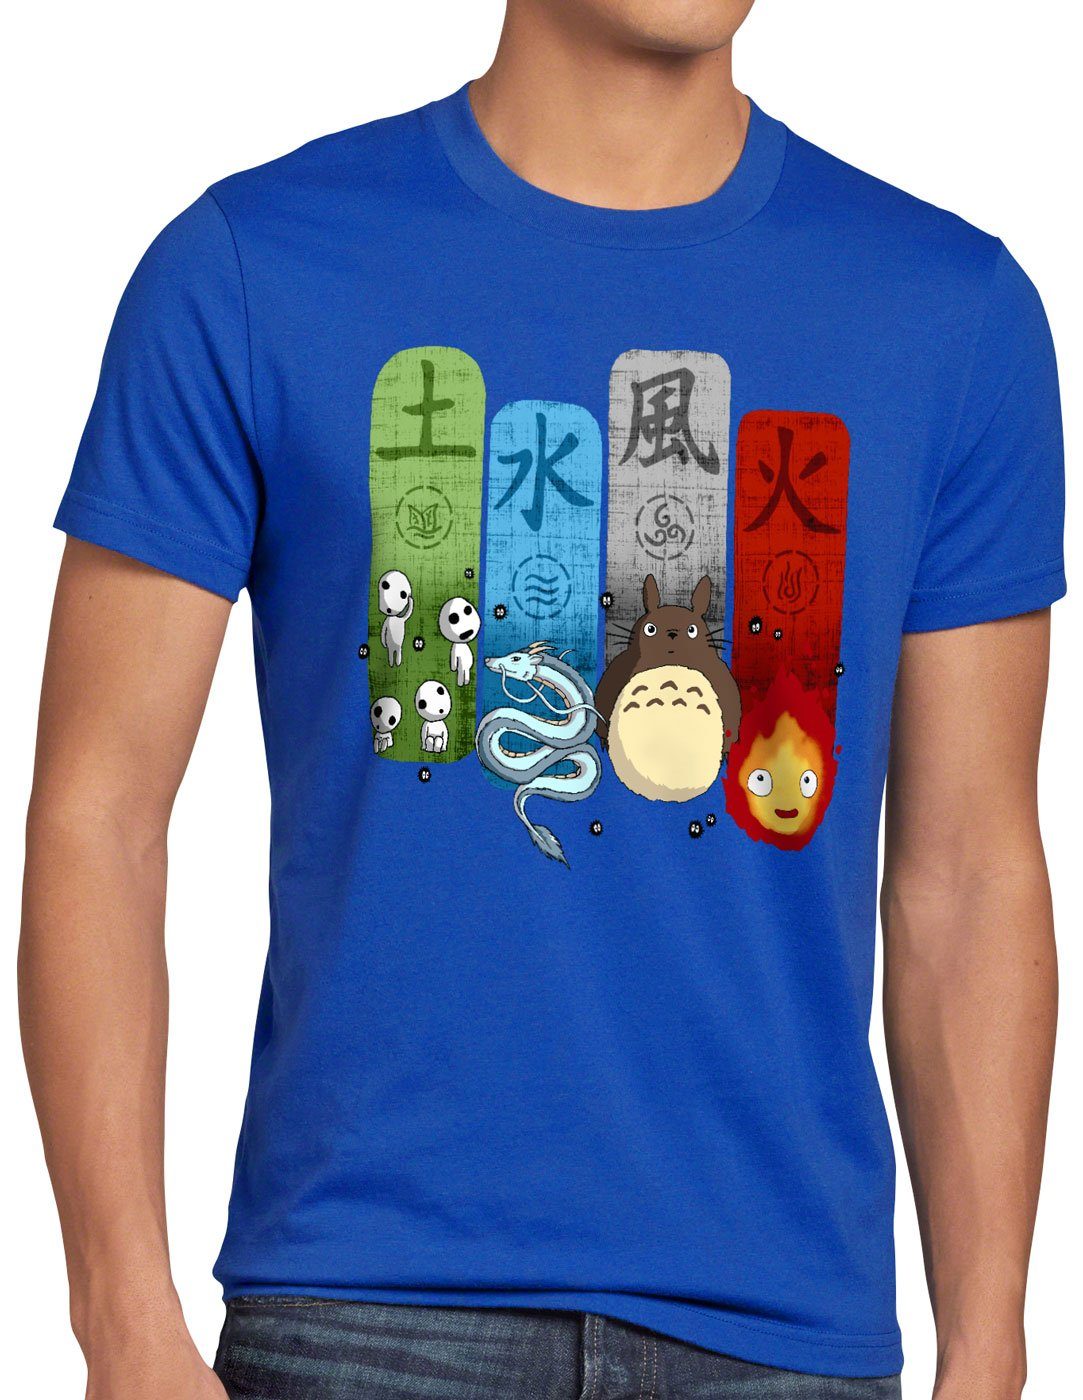 film Herren Family blau totoro T-Shirt style3 Print-Shirt schloss mononoke Ghibli chihiro